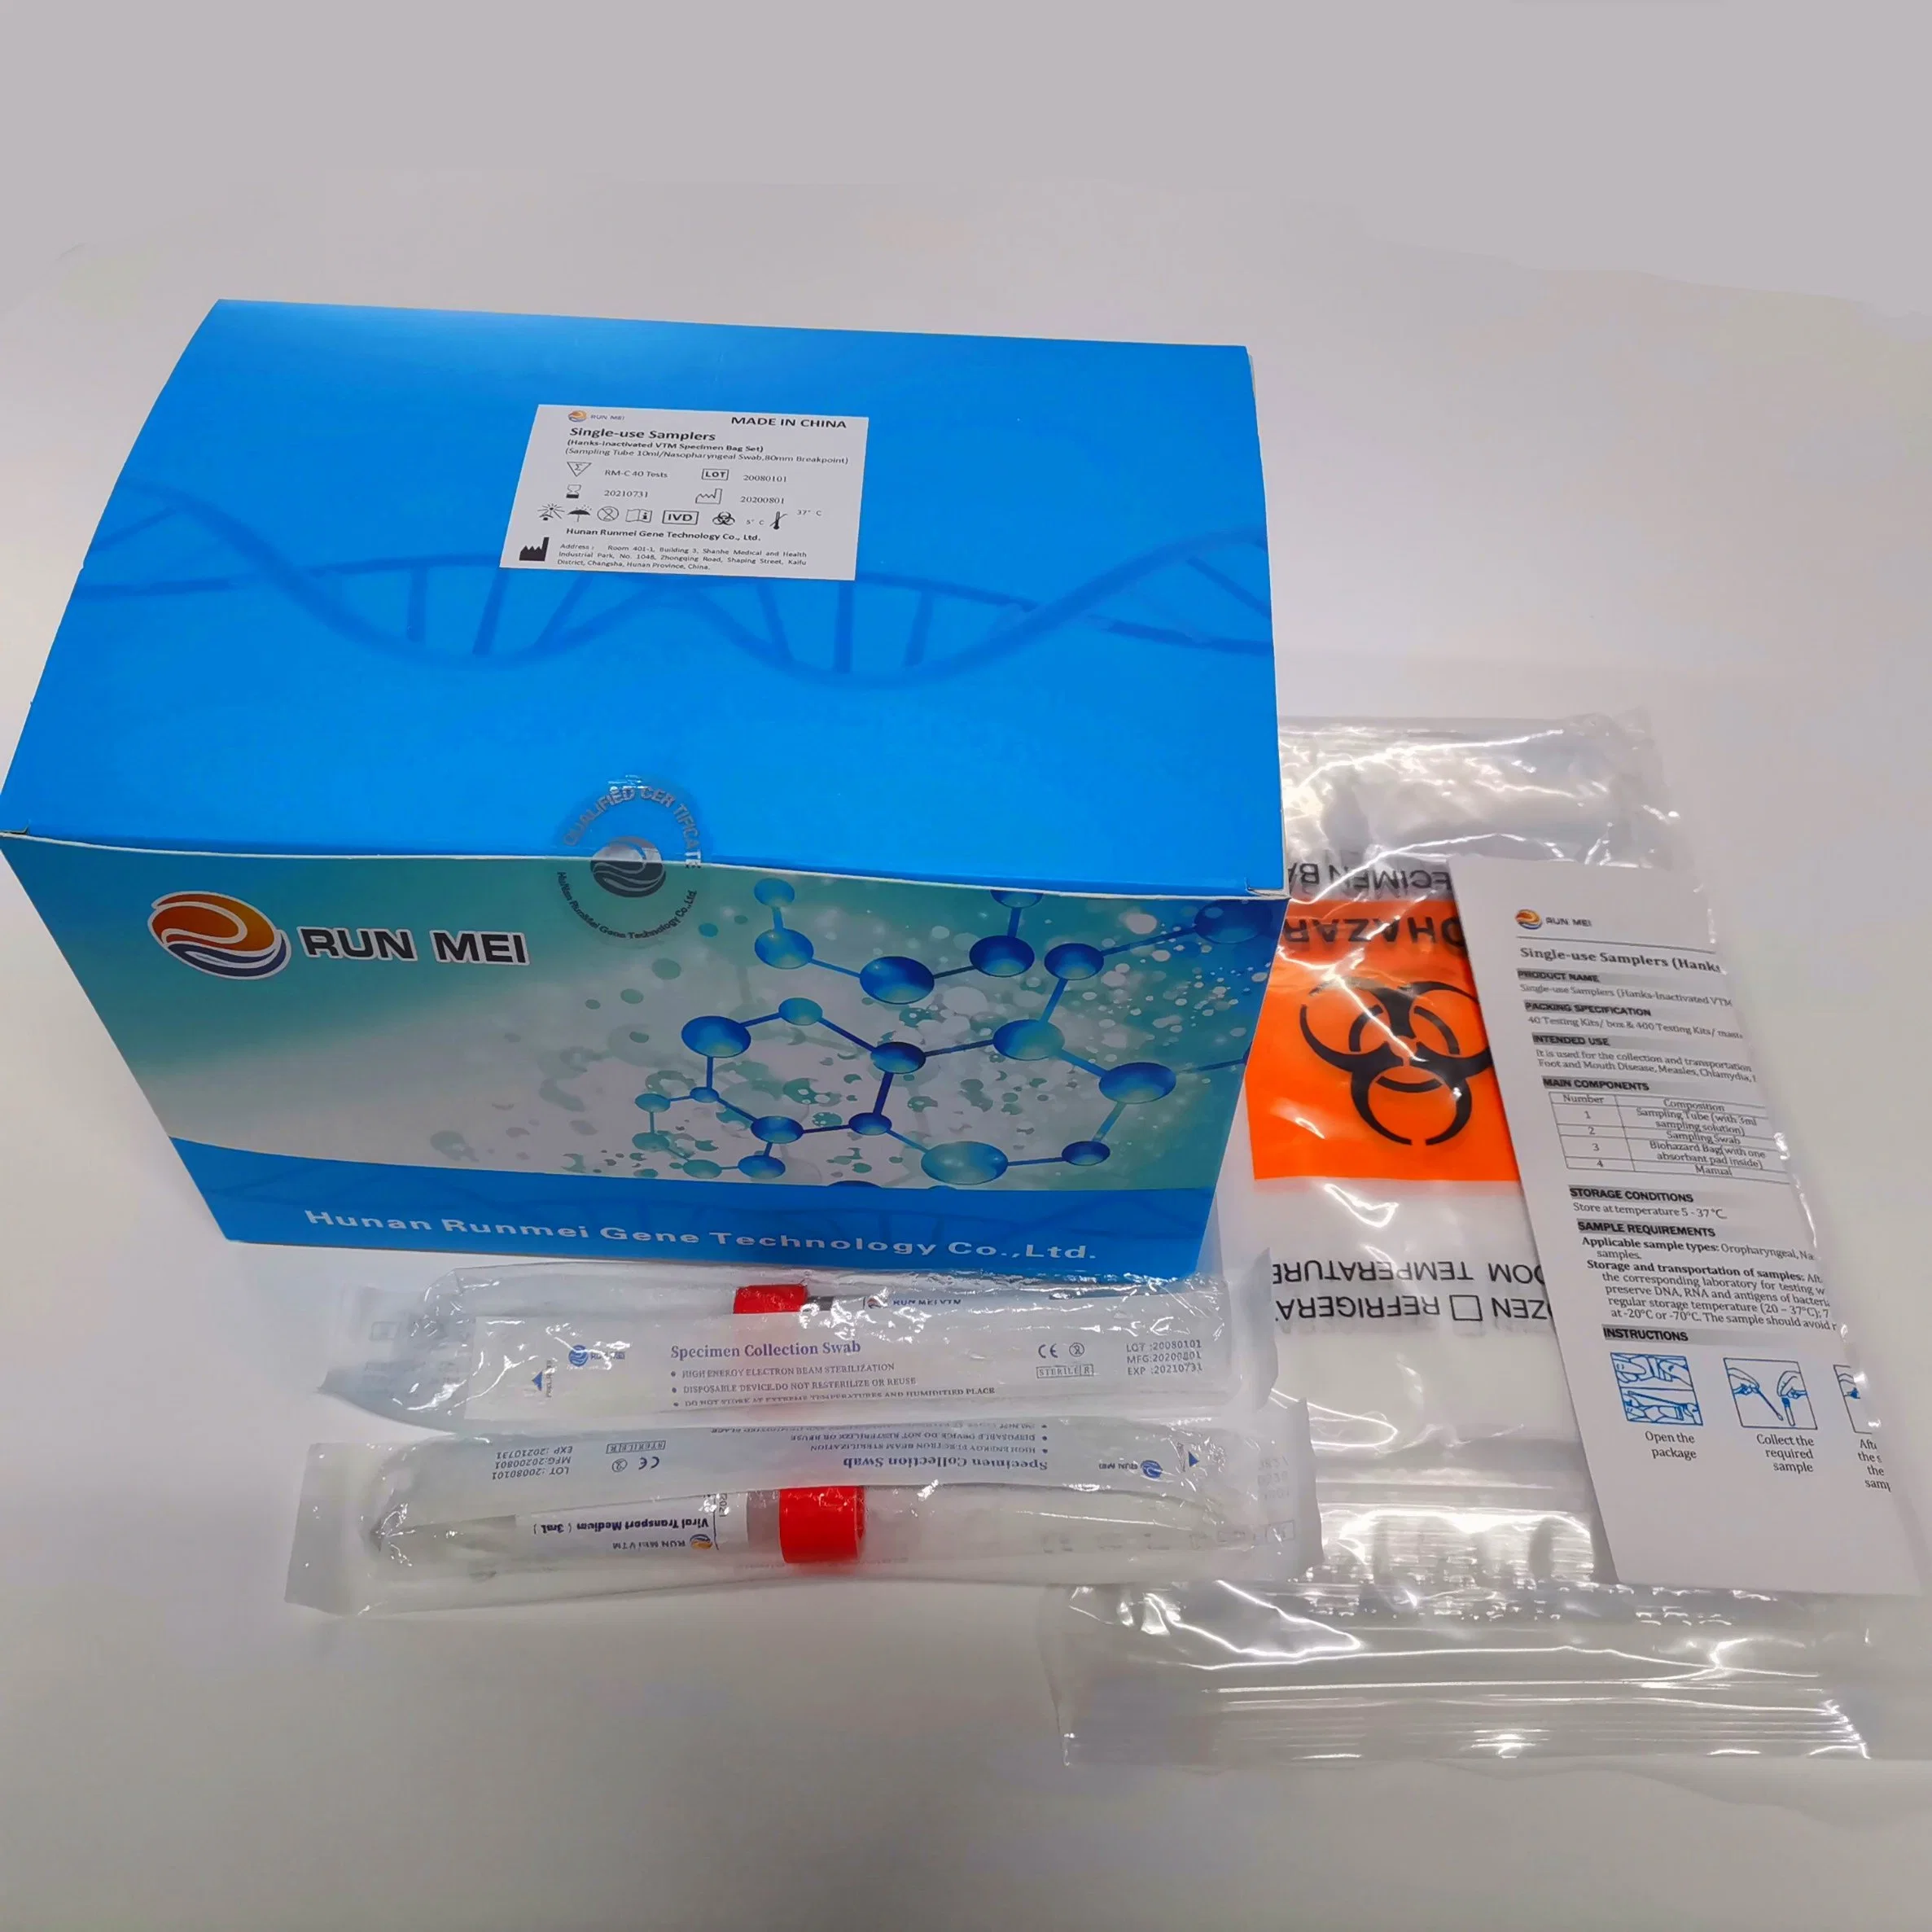 La collecte de spécimens écouvillon coton-tige floqué Fabricant Runmei gène, de diagnostic et de la collecte de spécimens d'écouvillons Single-Use Products